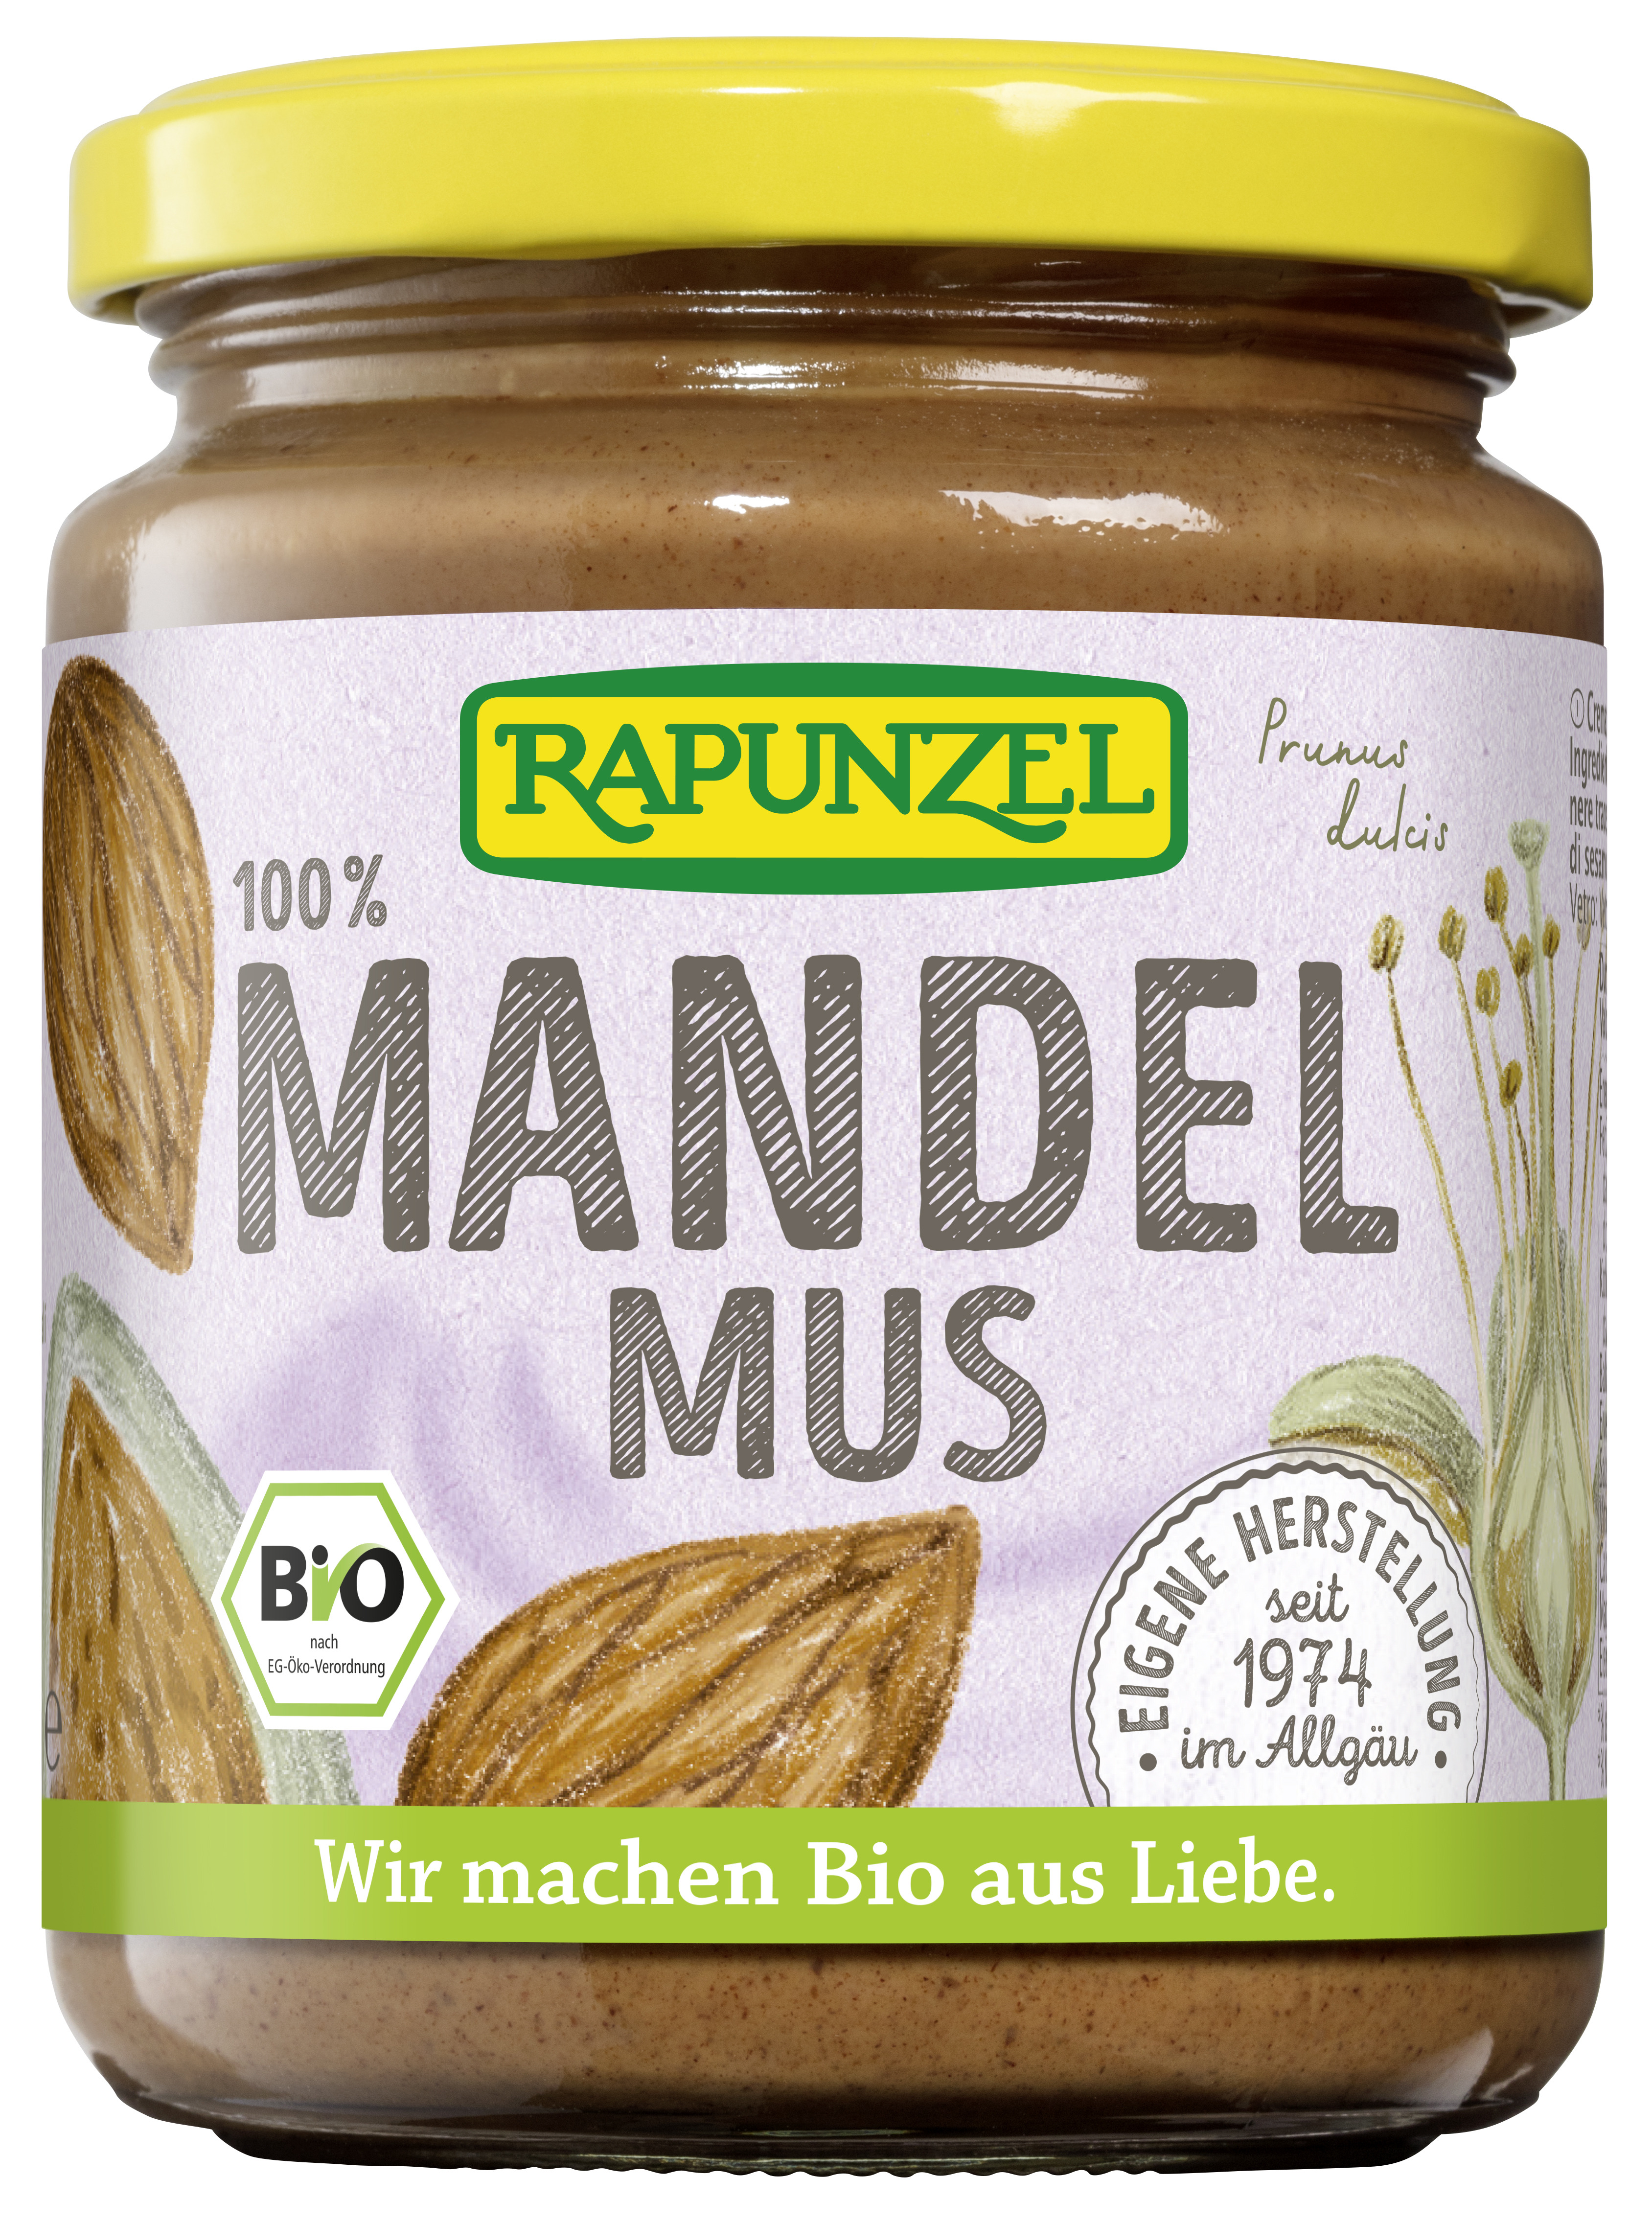 Produktfoto Mandelmus von Rapunzel.